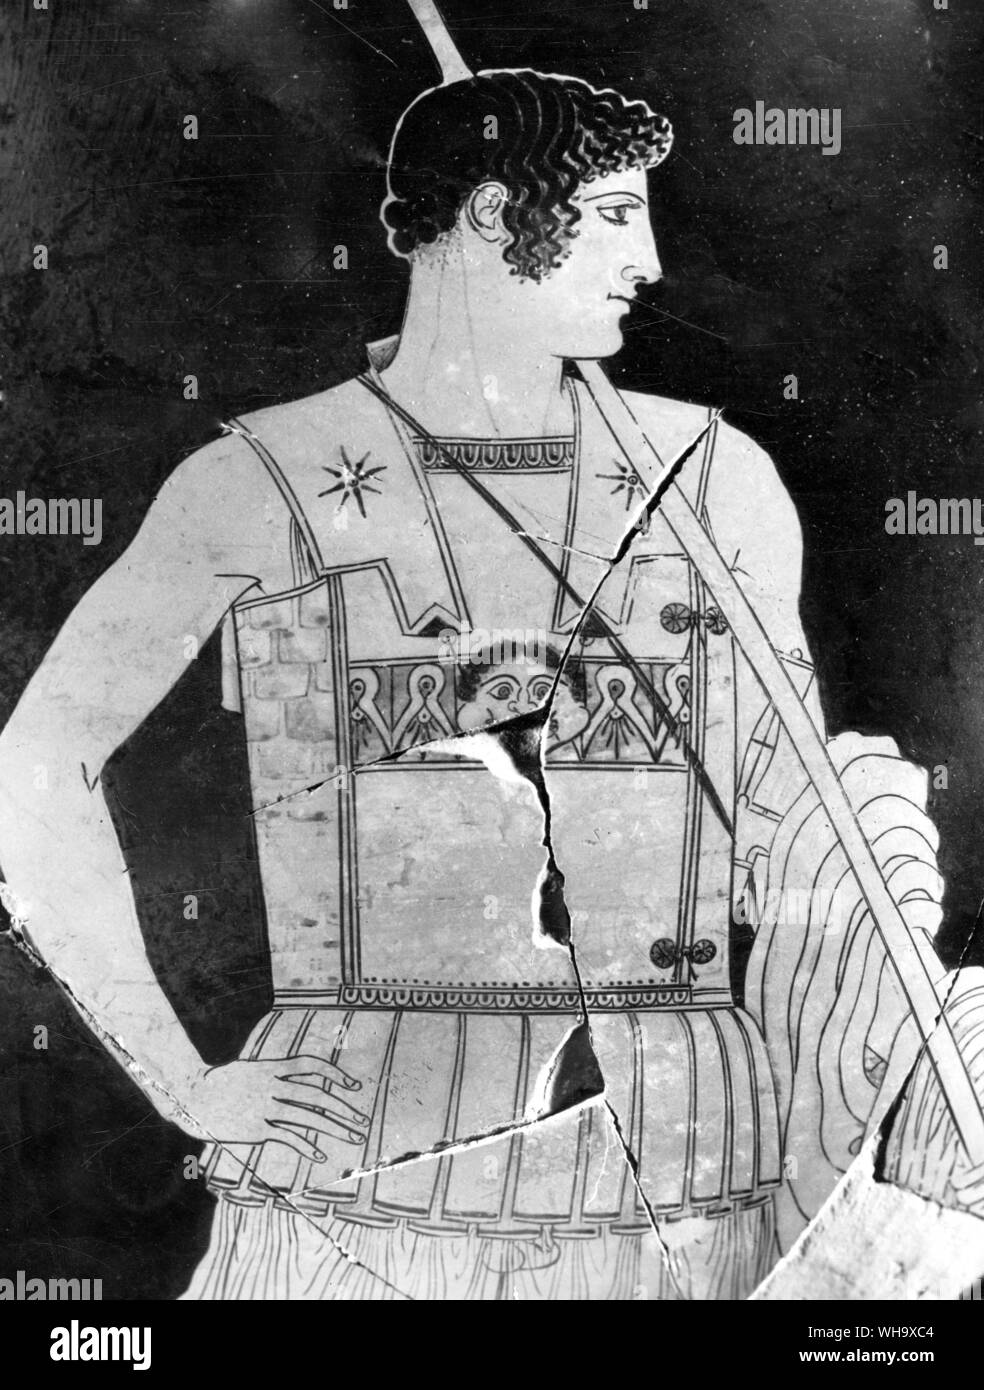 Alexander's heroischen Vorfahren, Achilles, aus einer Vase Malerei in der Mitte des fünften Jahrhunderts Dachgeschoss Master bekannt als die 'Achilles Maler" Stockfoto